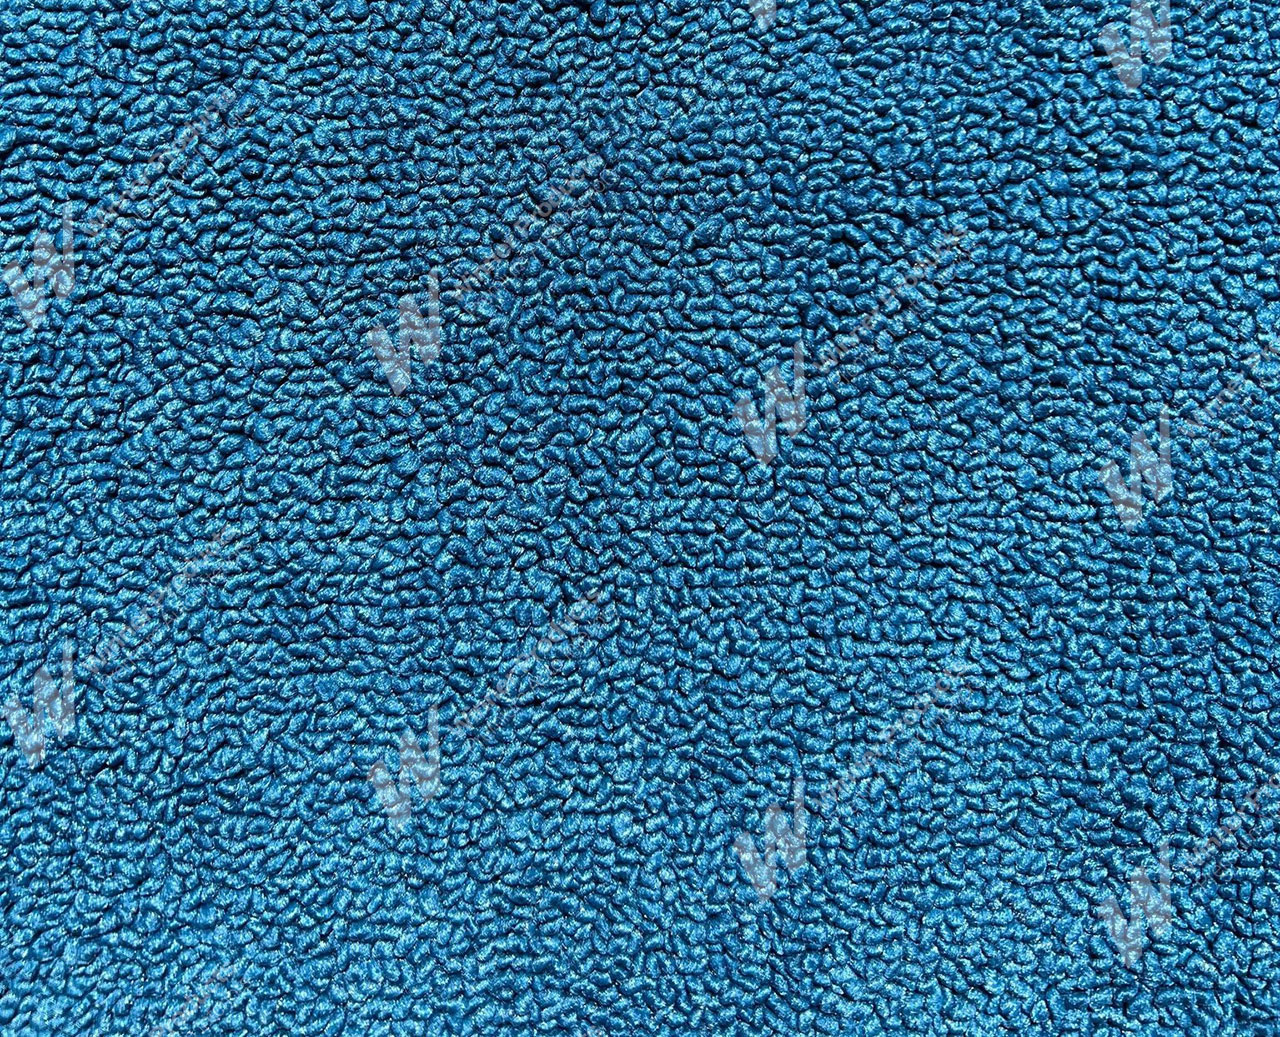 Holden Kingswood HT Kingswood Panel Van 14G Twilight Blue & Castillion Weave Carpet (Image 1 of 1)